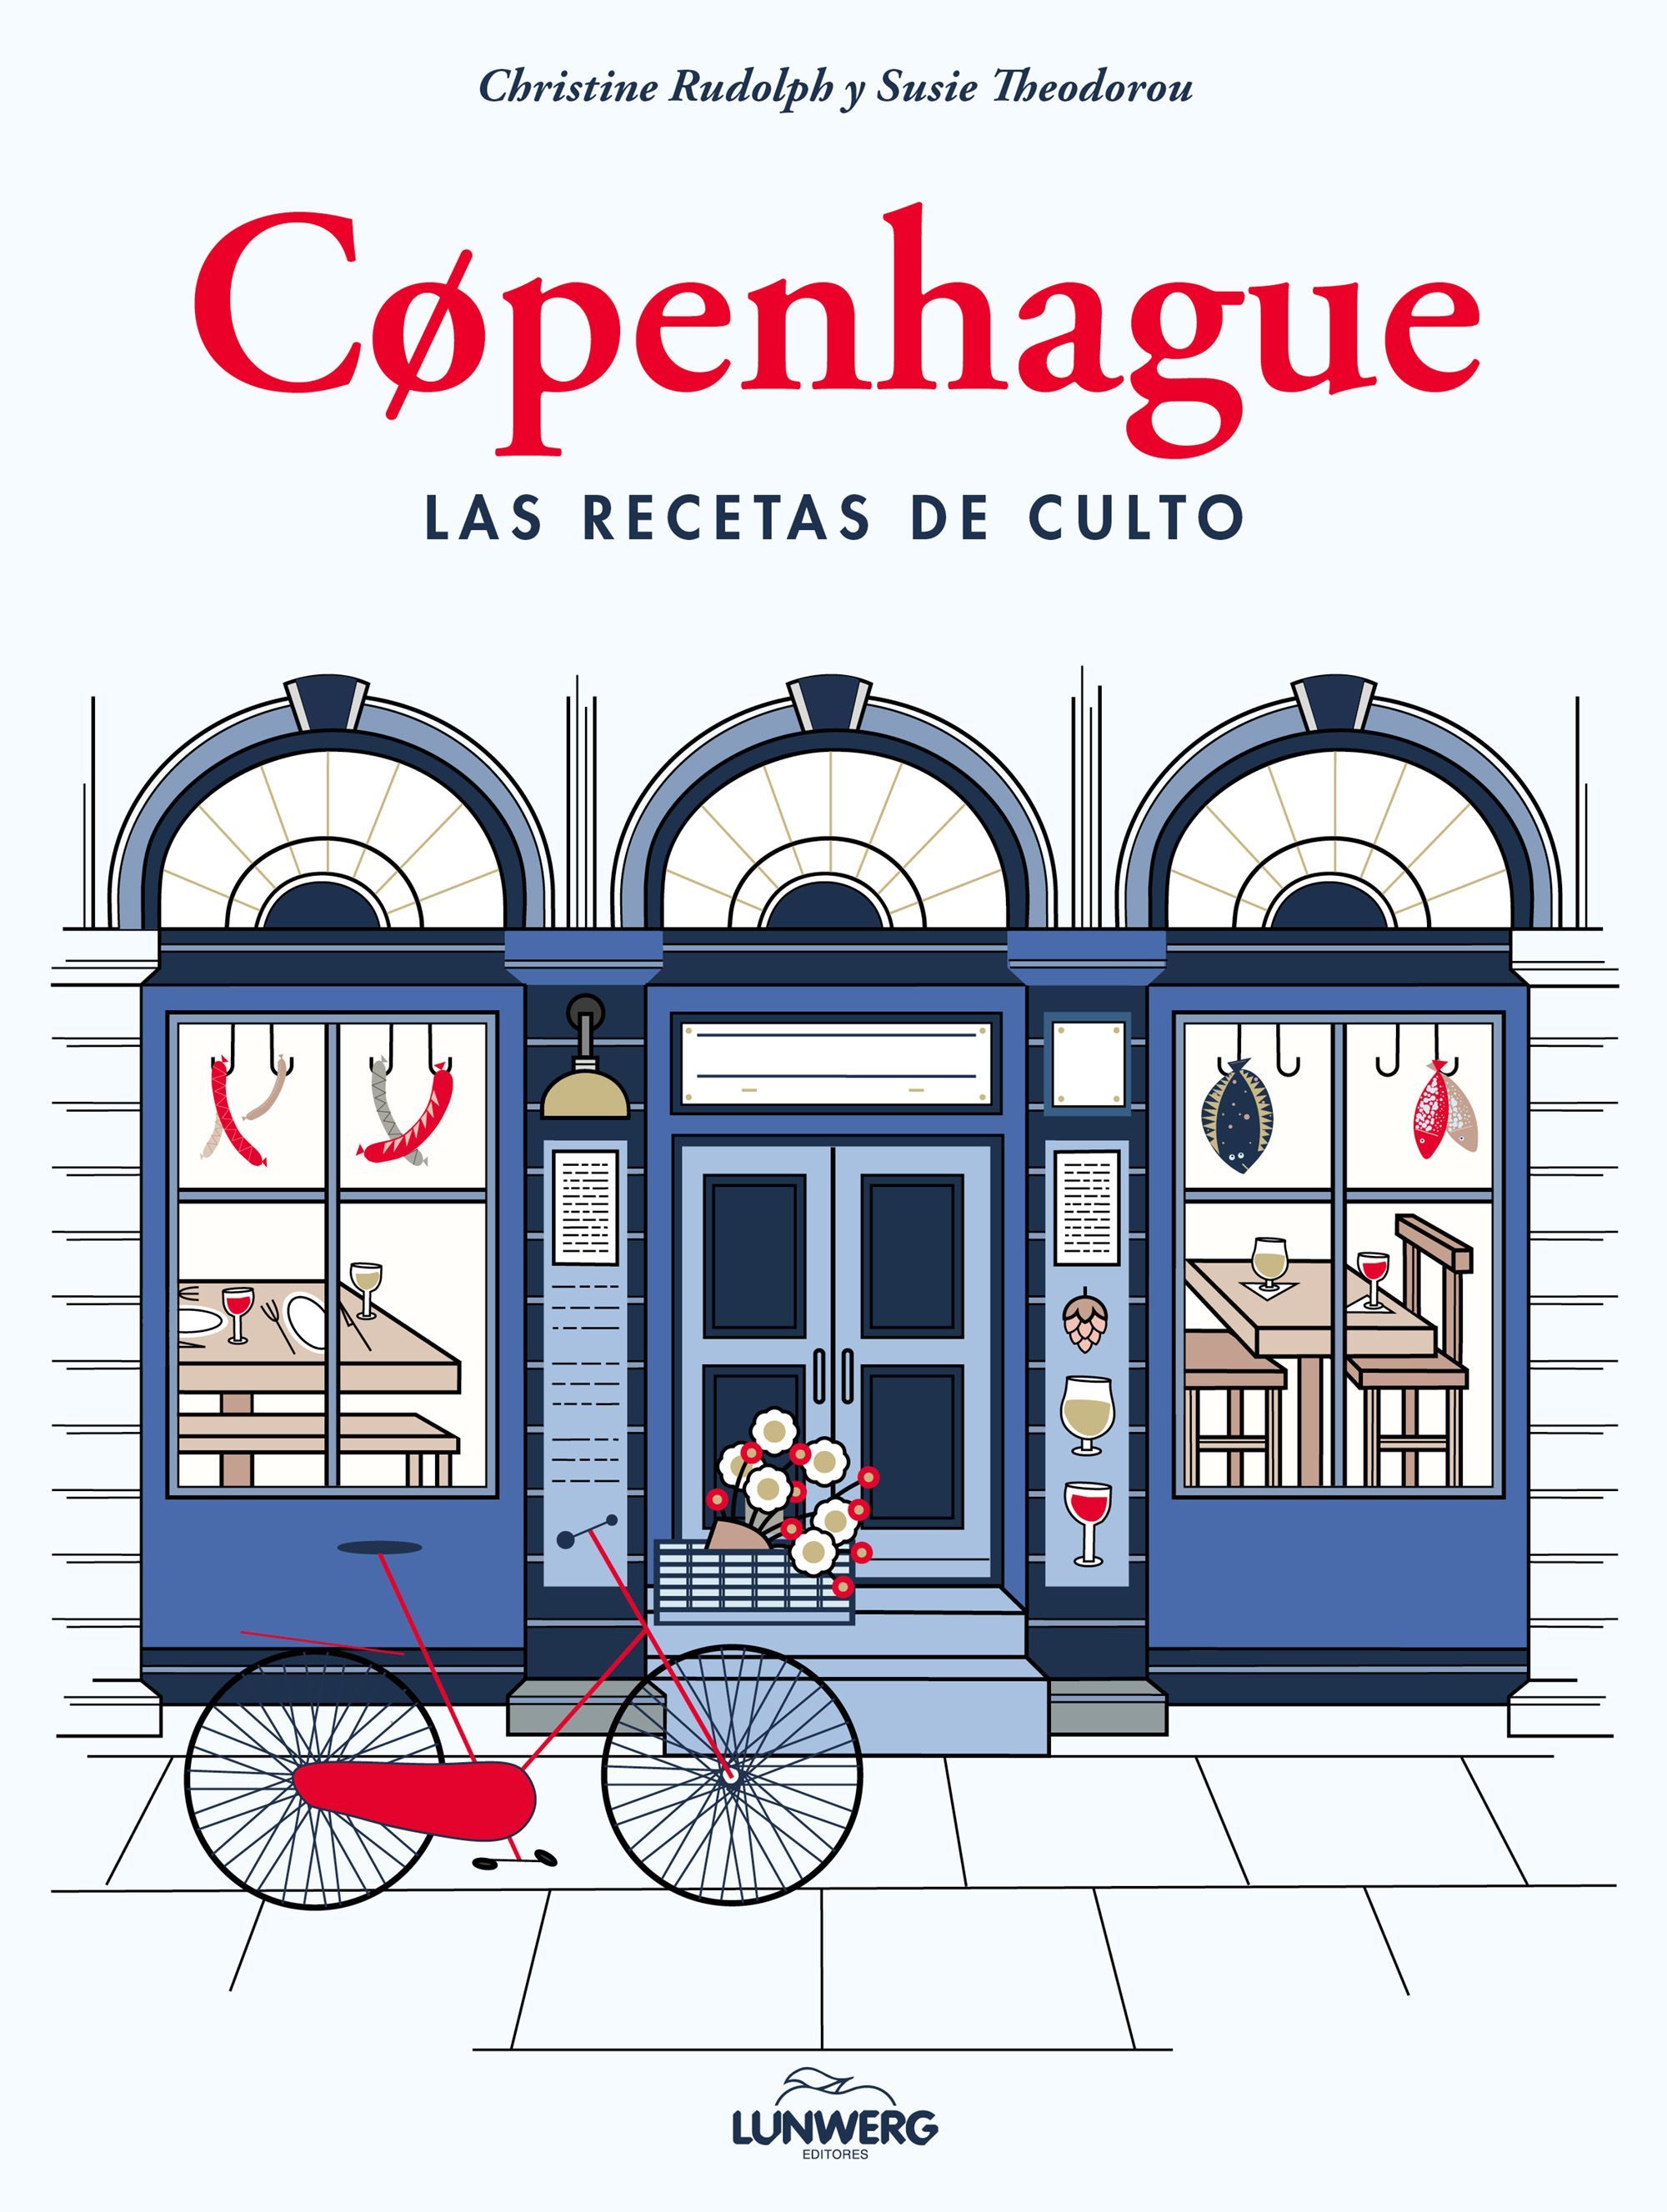 Un viaje impreso para conocer Copenhague, una de las mecas gastronómica del mundo